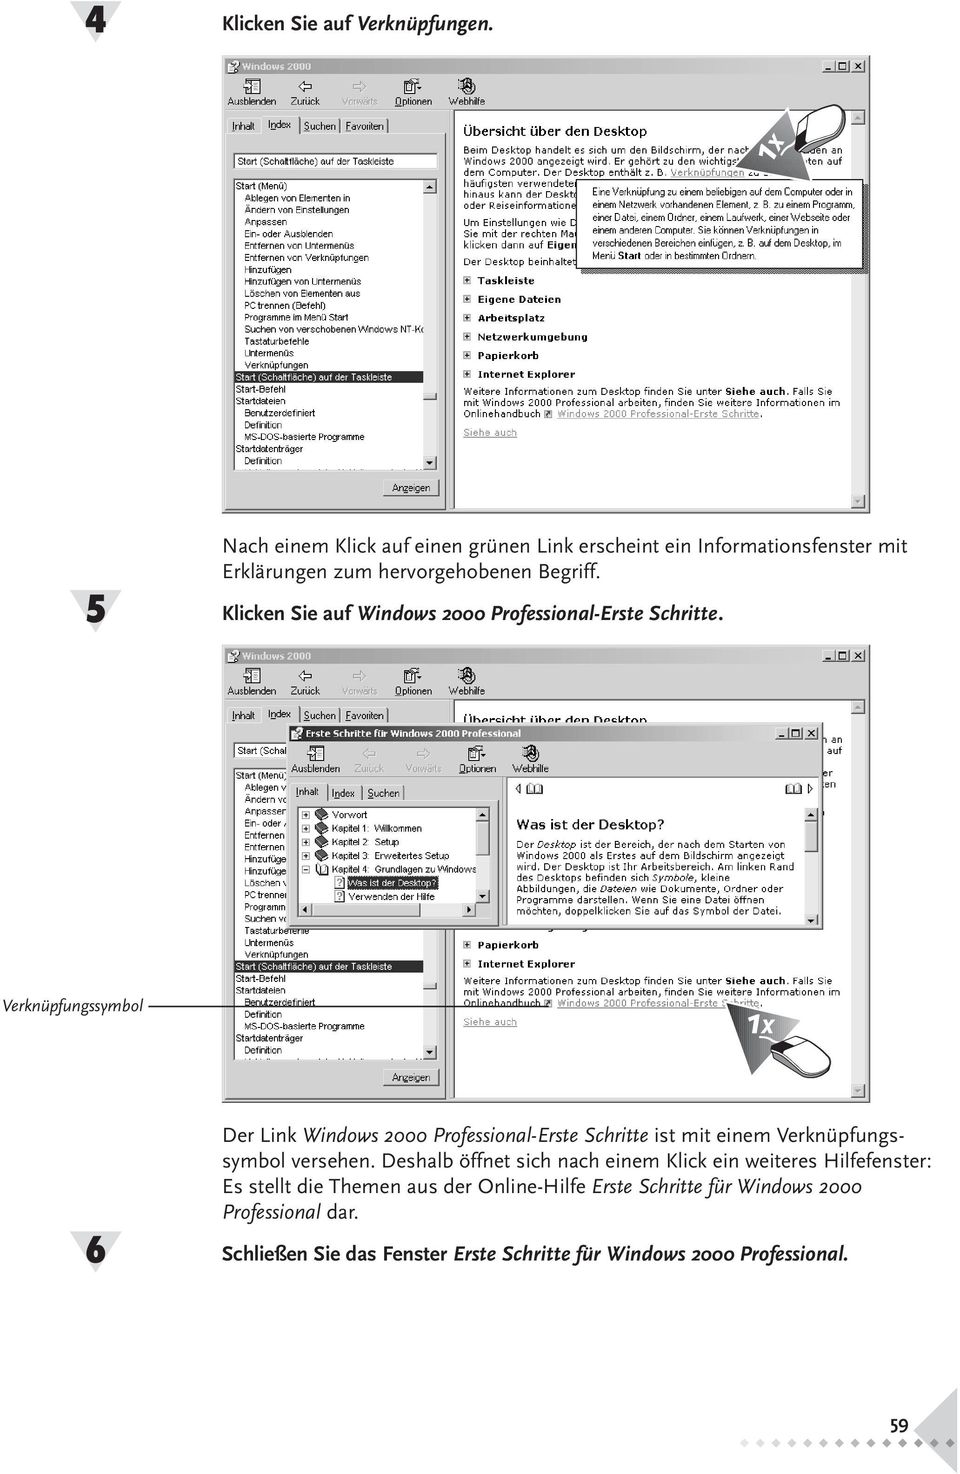 Klicken Sie auf Windows 2000 Professional-Erste Schritte.